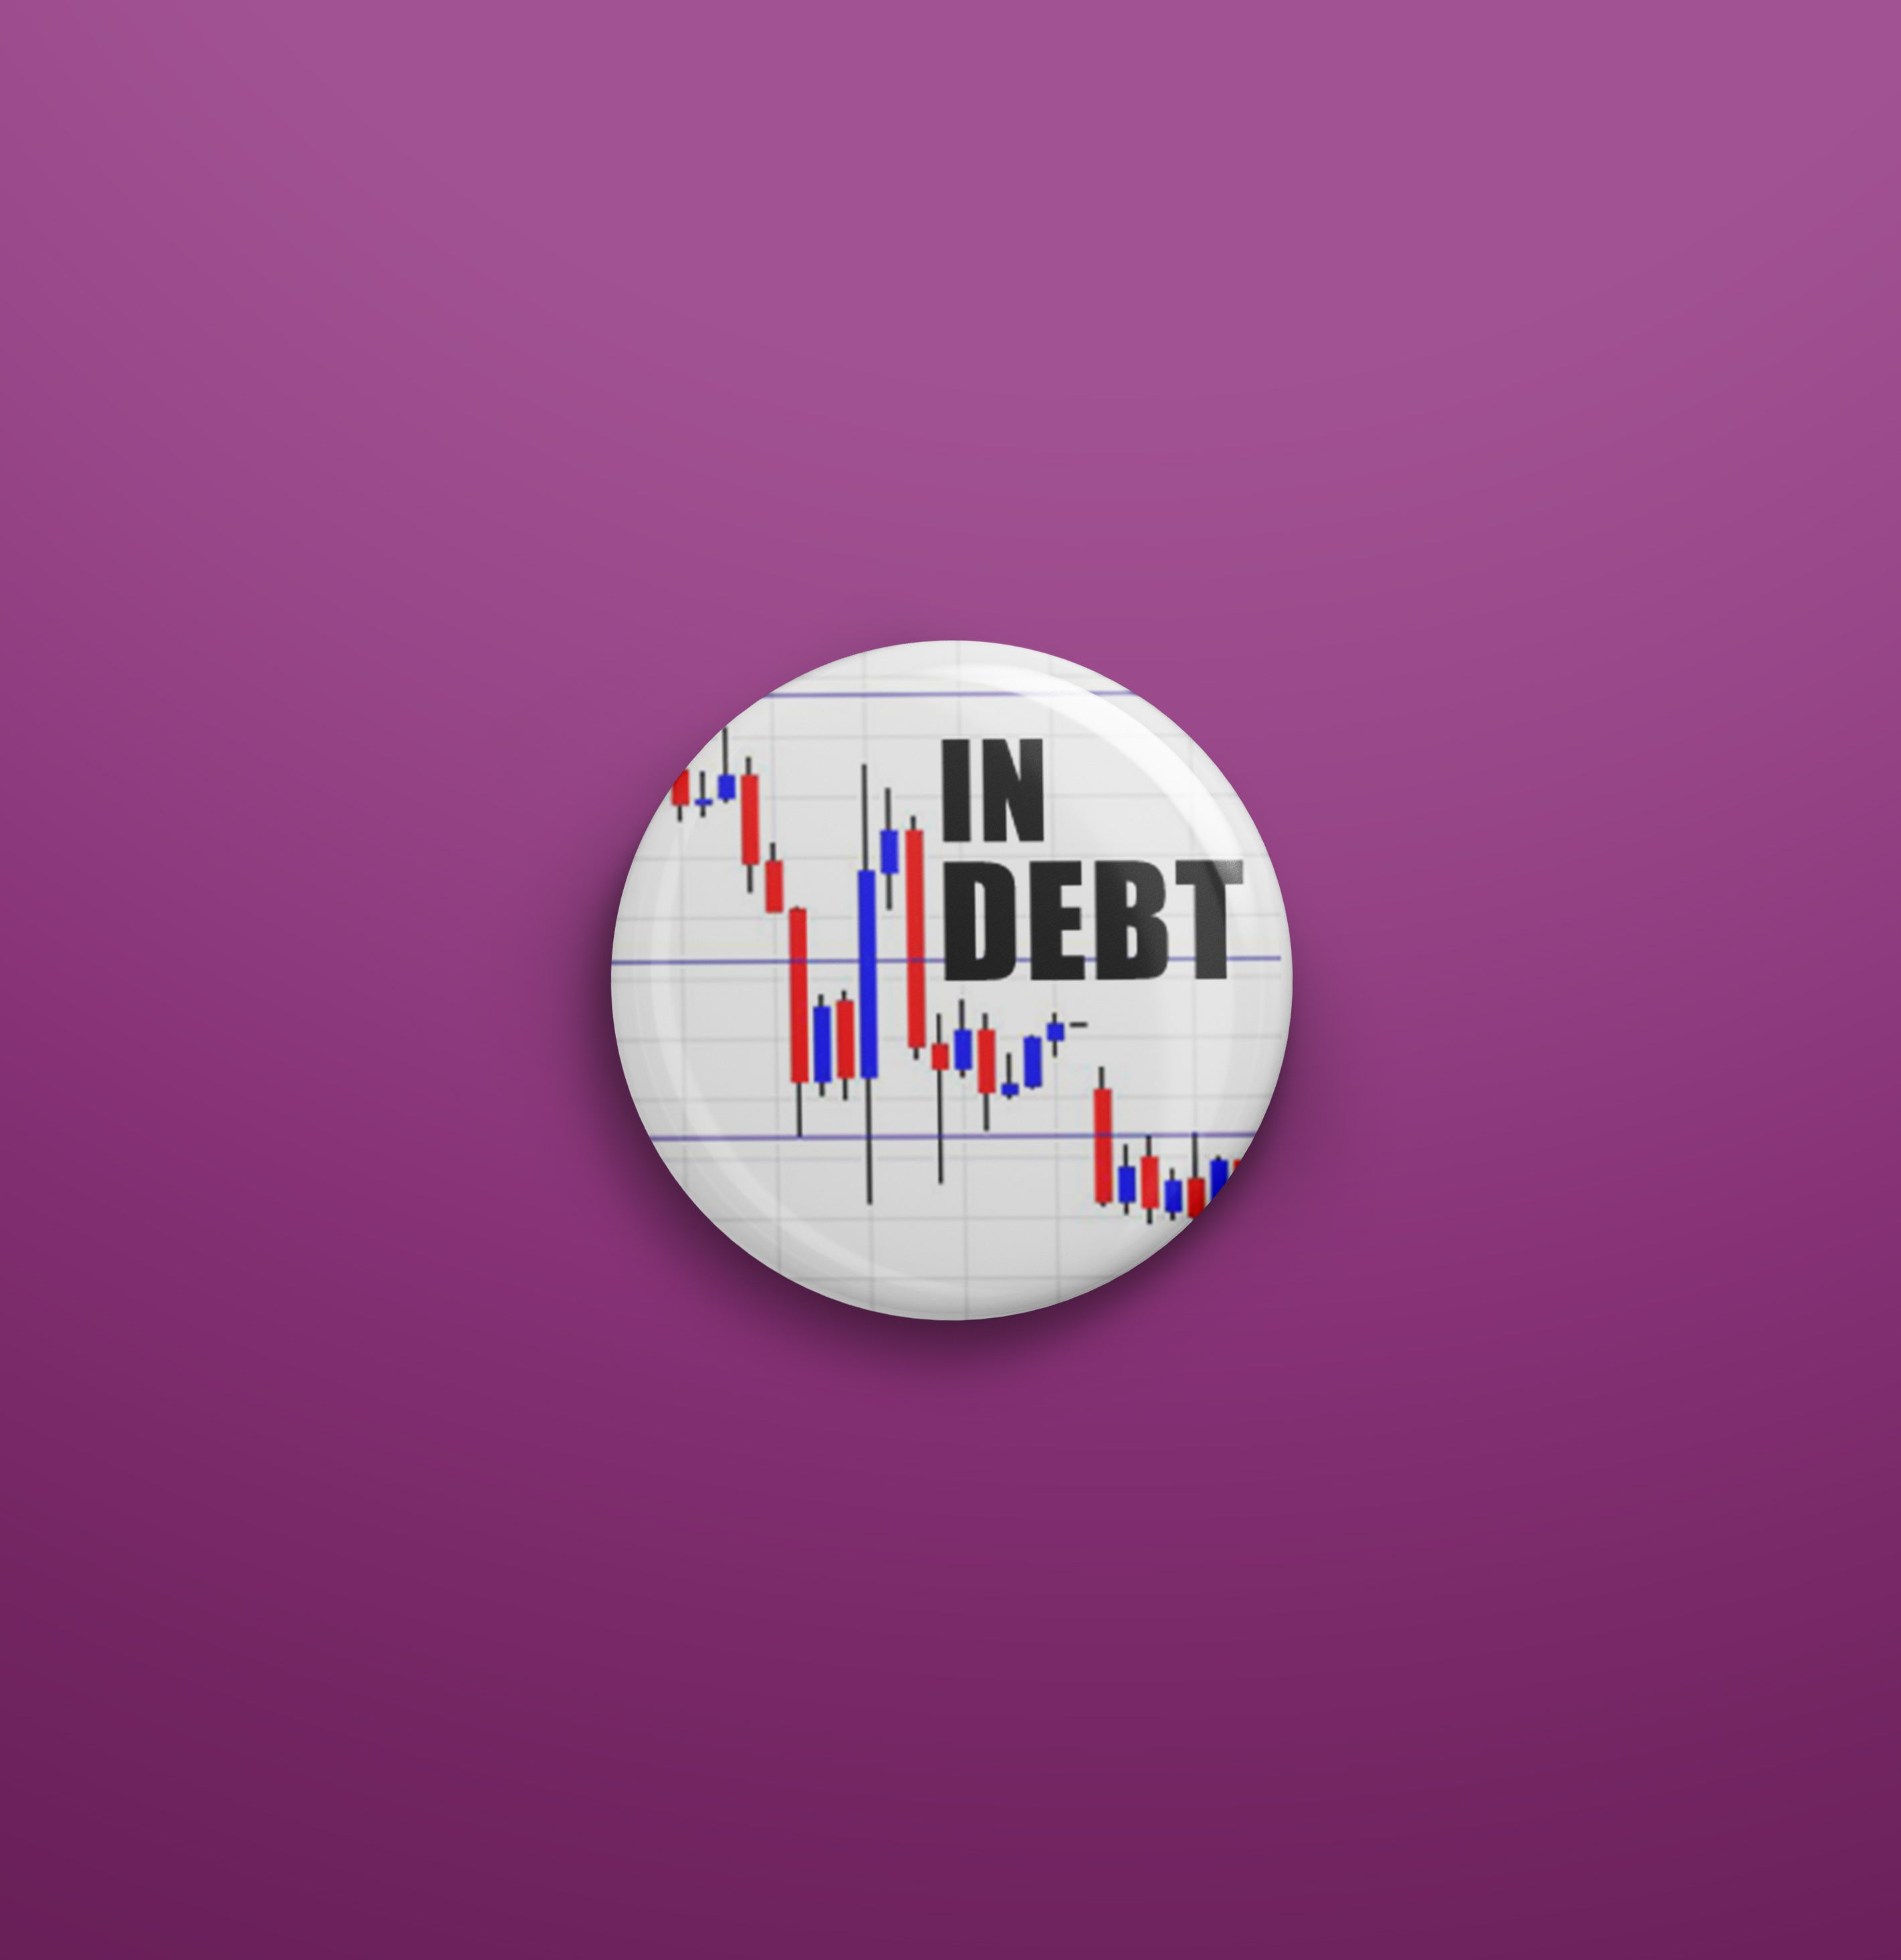 In debt